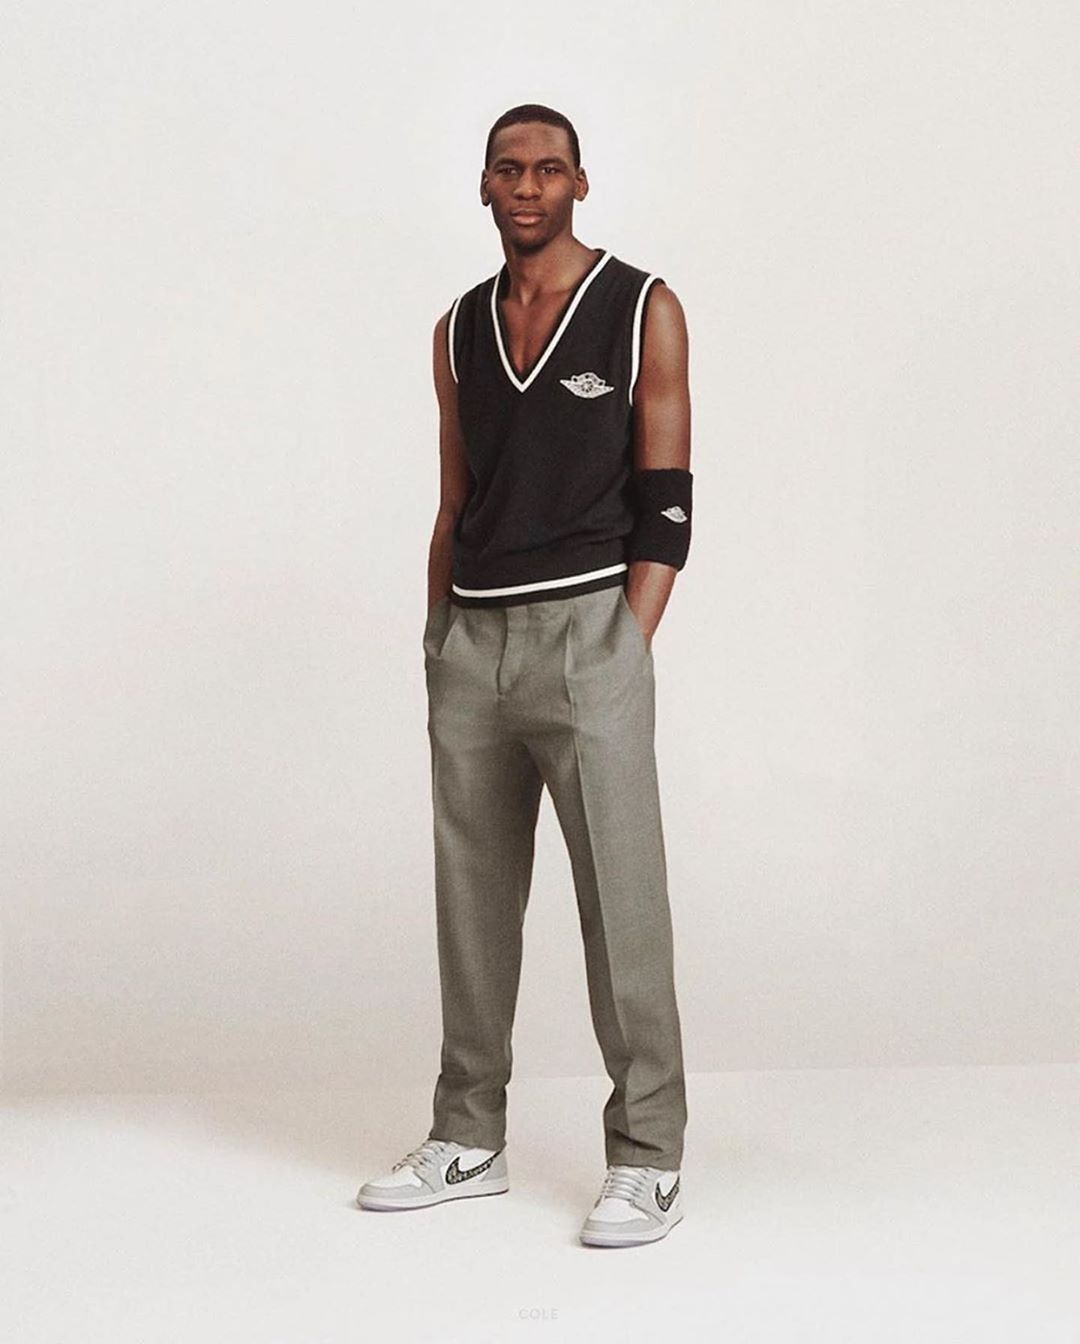 Магазин Streetball - Молодой Майкл позирует в коллекции Dior x Air Jordan. Архив, середина 80-ых.

@cole постарался🙃